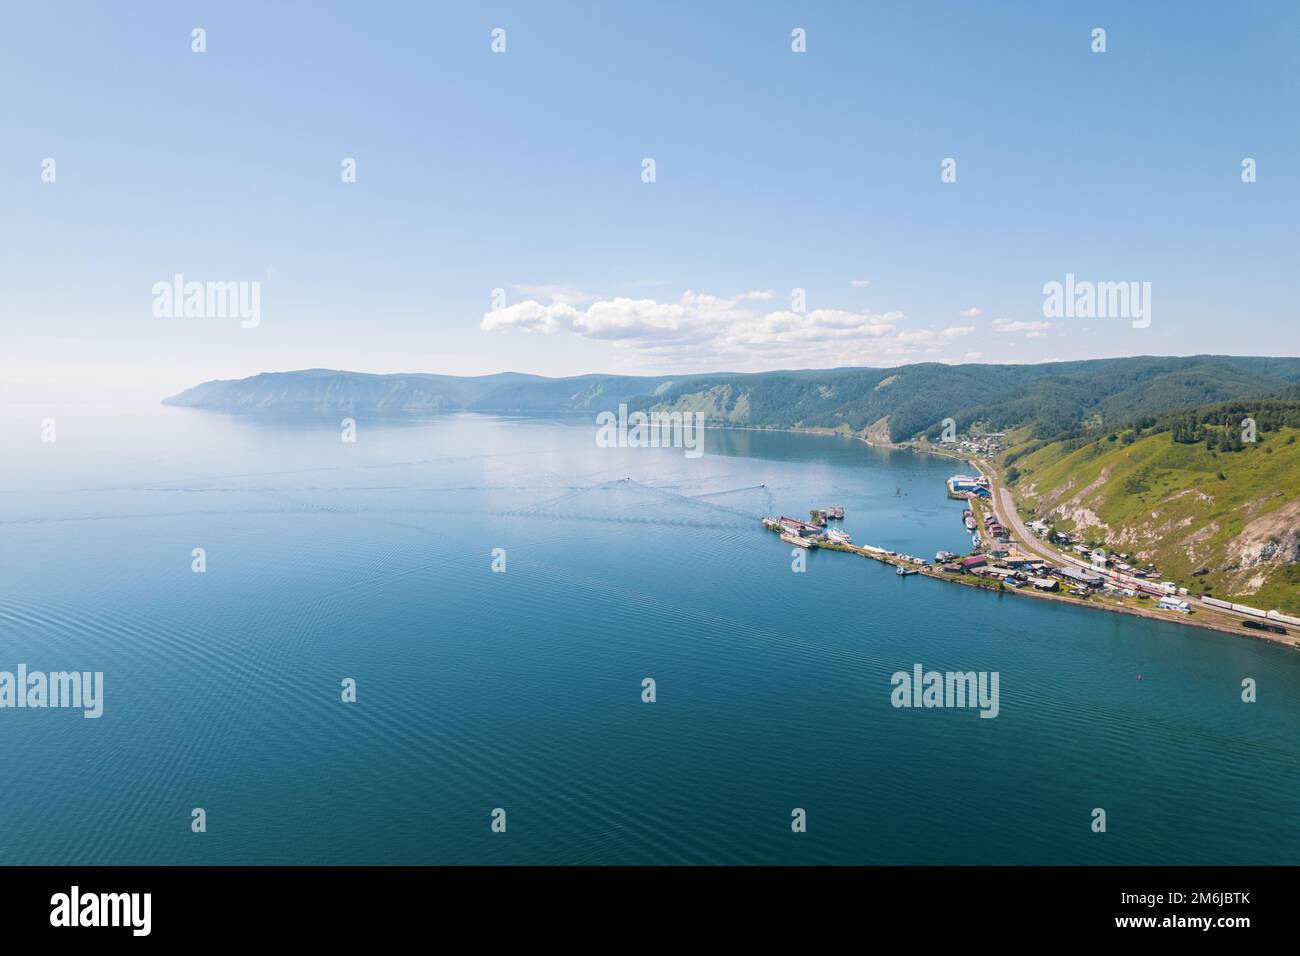 Il lago Baikal è un meraviglioso gioiello blu incorniciato da montagne e foreste panoramiche. Spettacolare vista aerea cinematografica sul lago Baikal. Via aerea Foto Stock